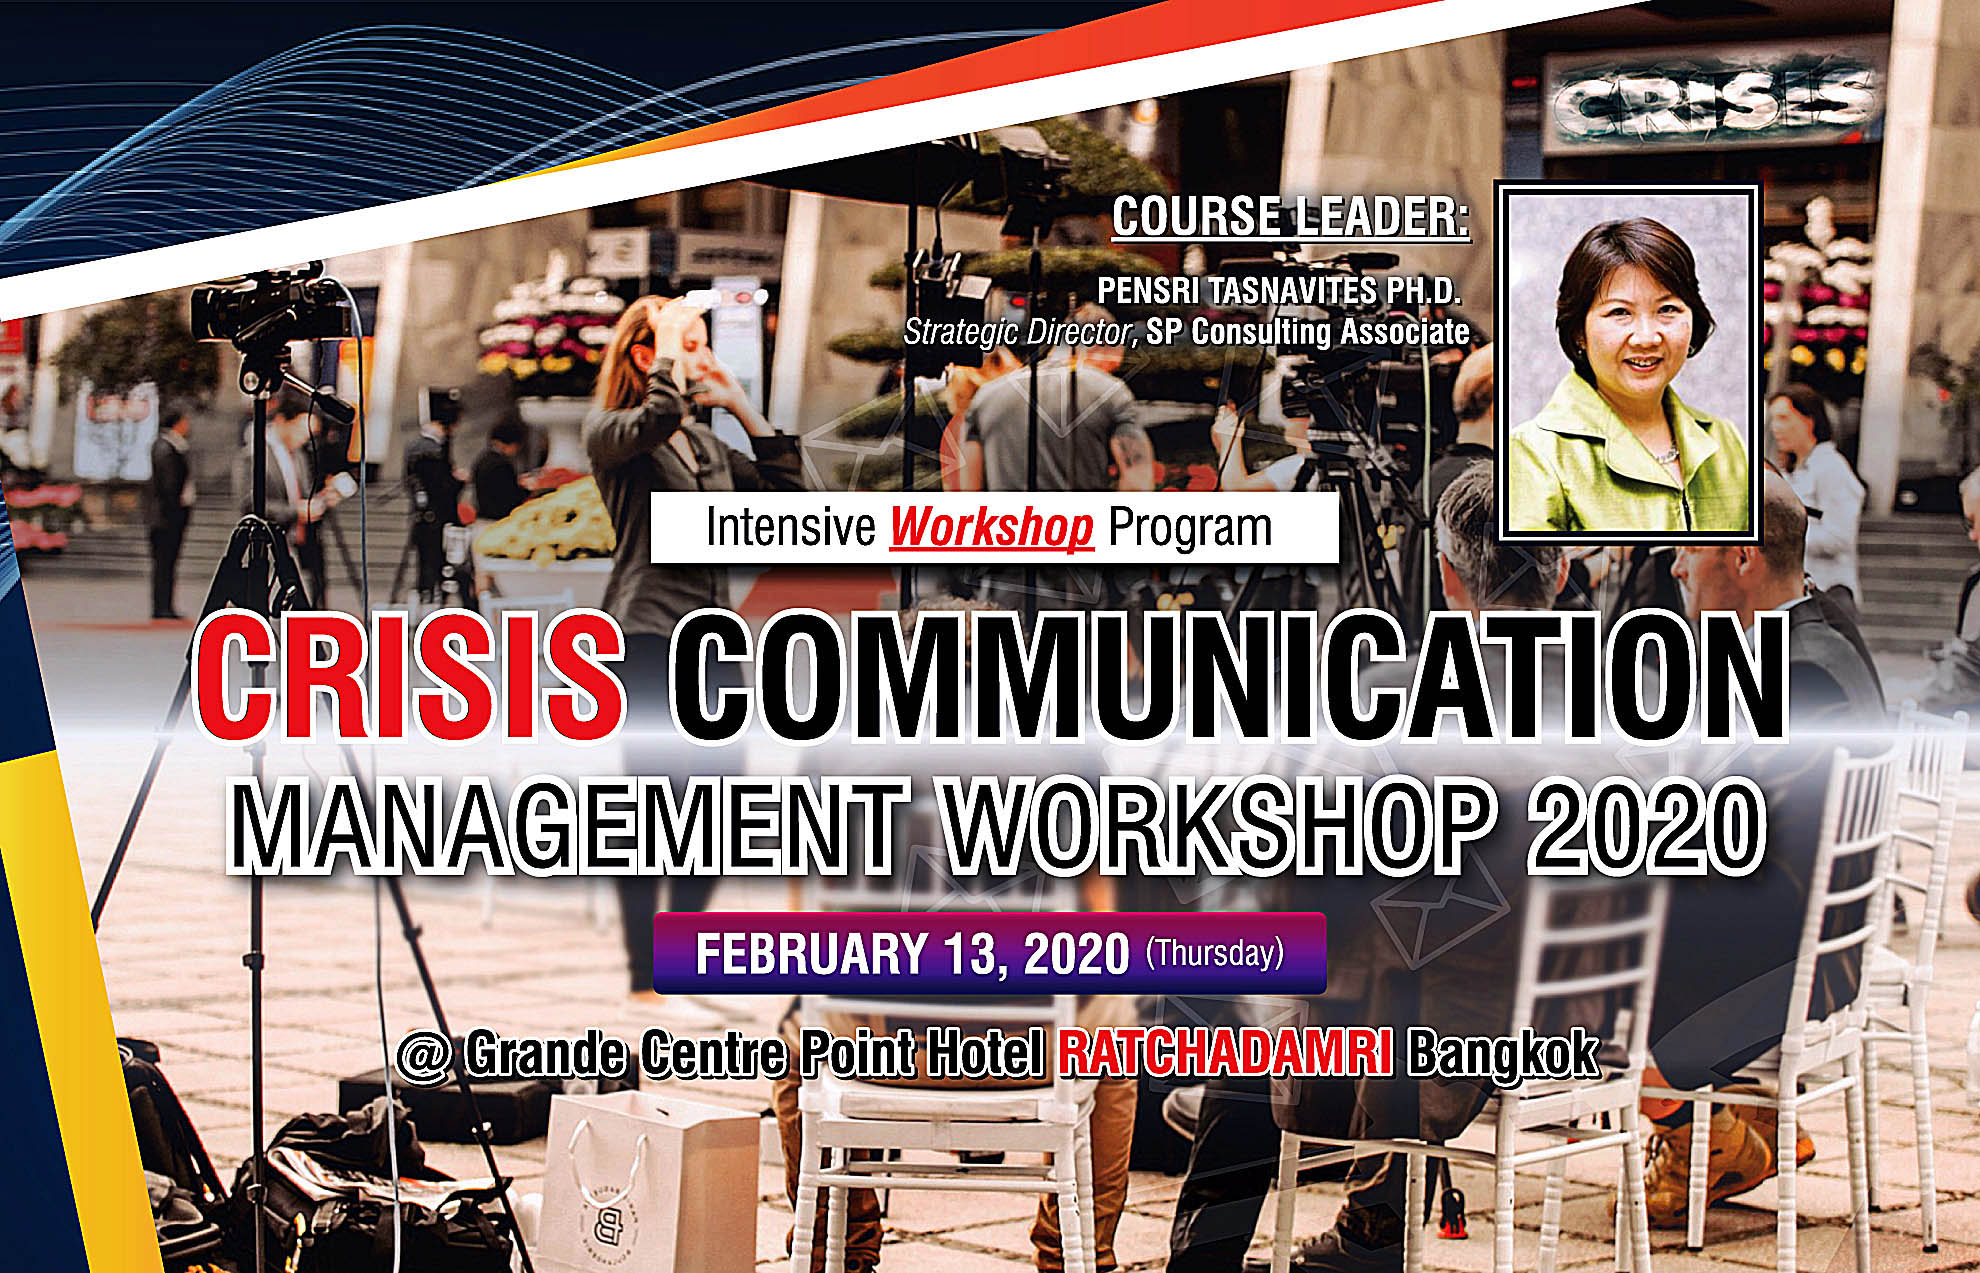 Crisis Communication Management Workshop 2020